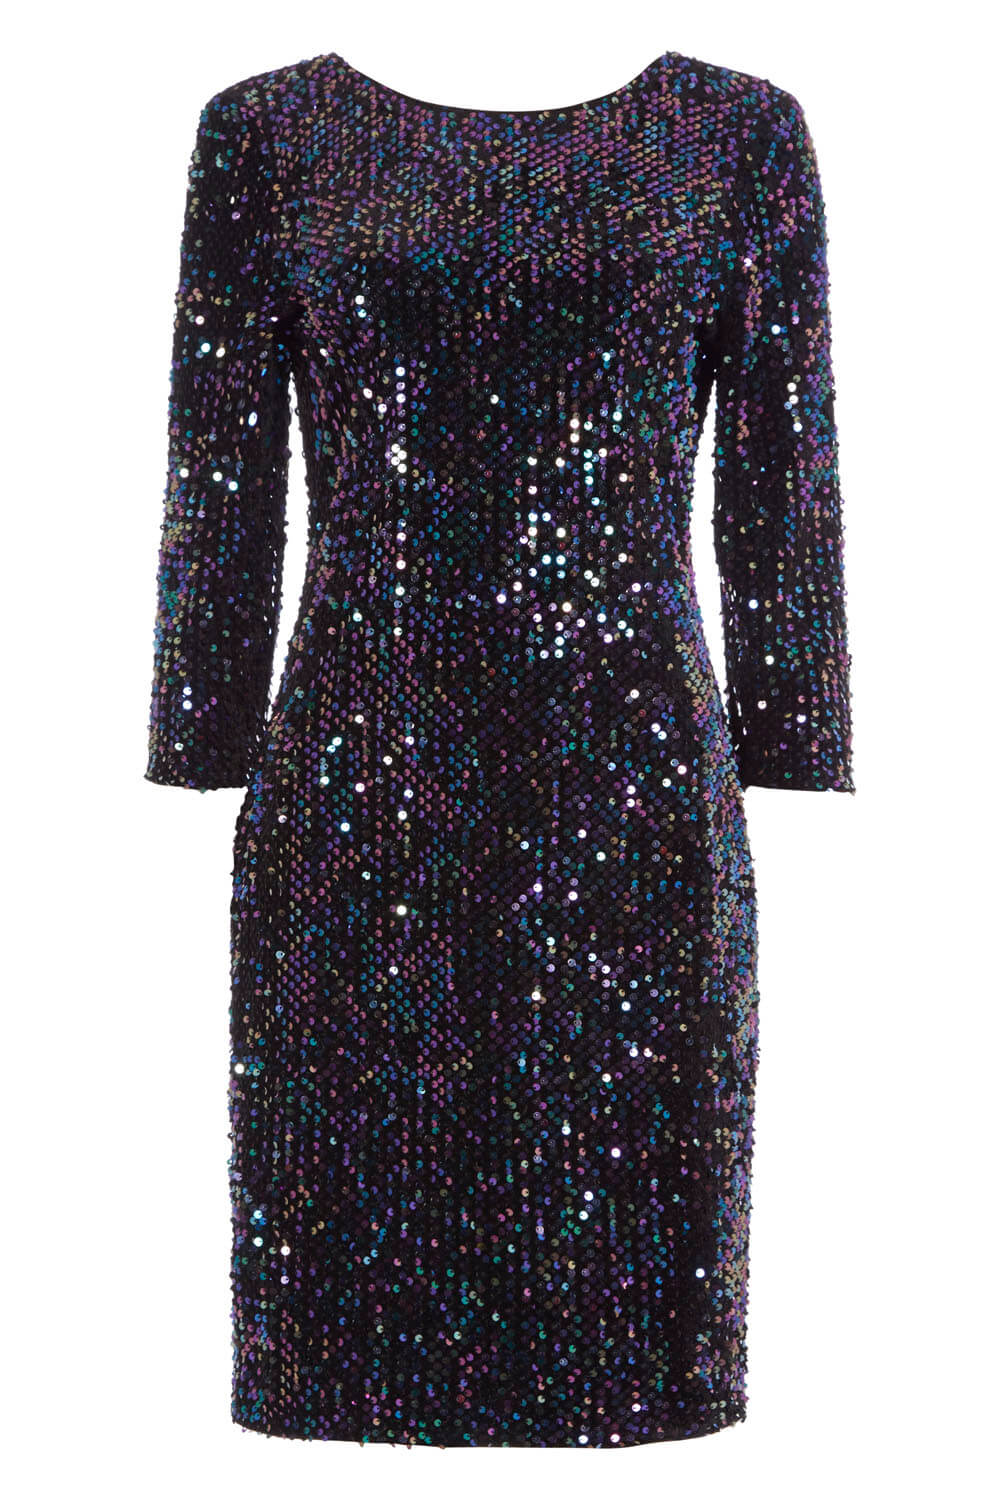 Black Velvet Sequin Shift Dress, Image 6 of 6